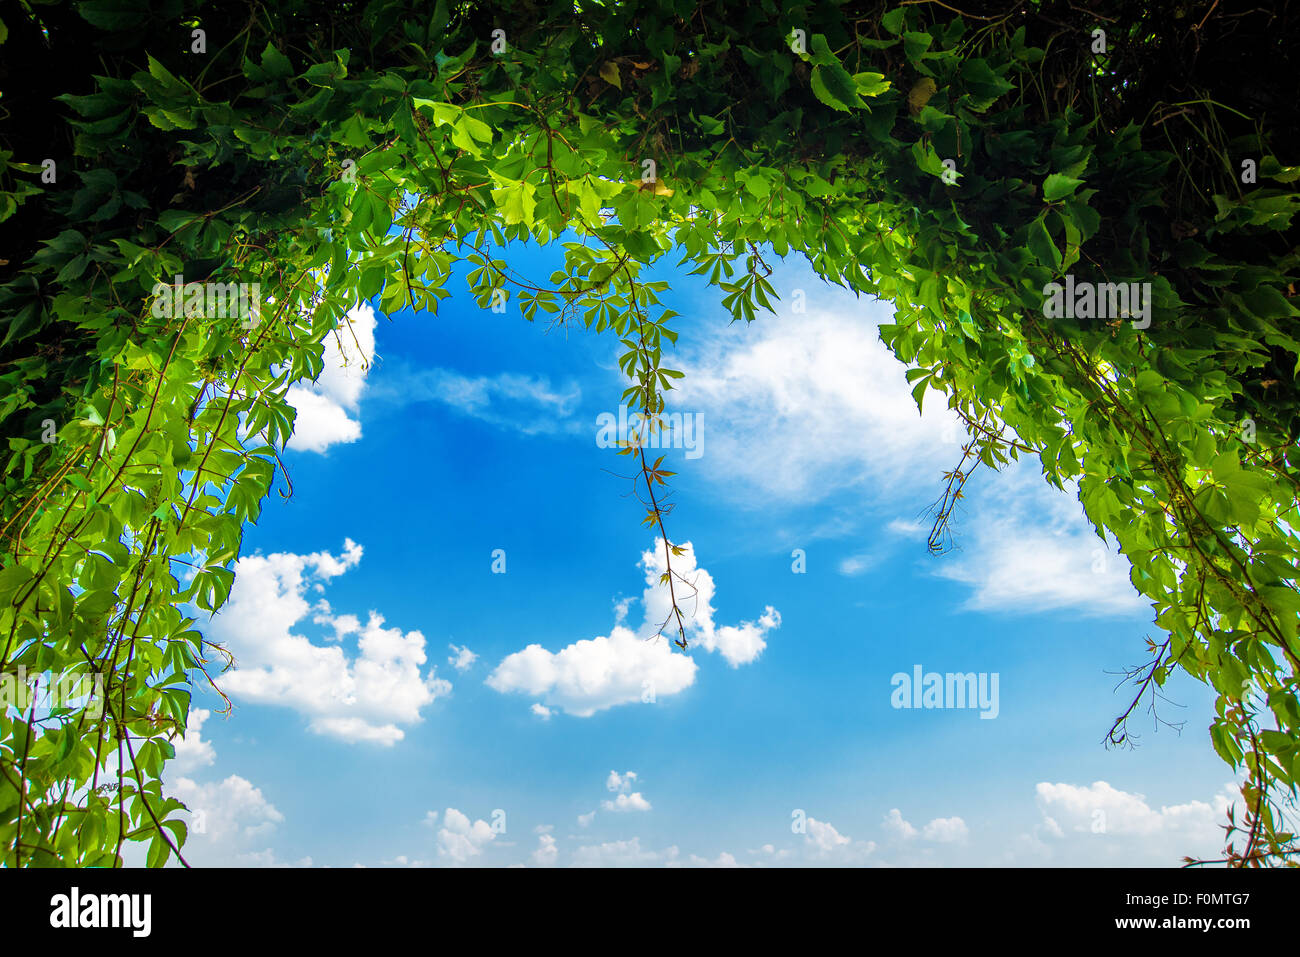 Grüner Garten Bogen-, Torbogen am Ende der Grünpflanze Tunnel, blauer Himmel und hellen, sonnigen Tag Stockfoto